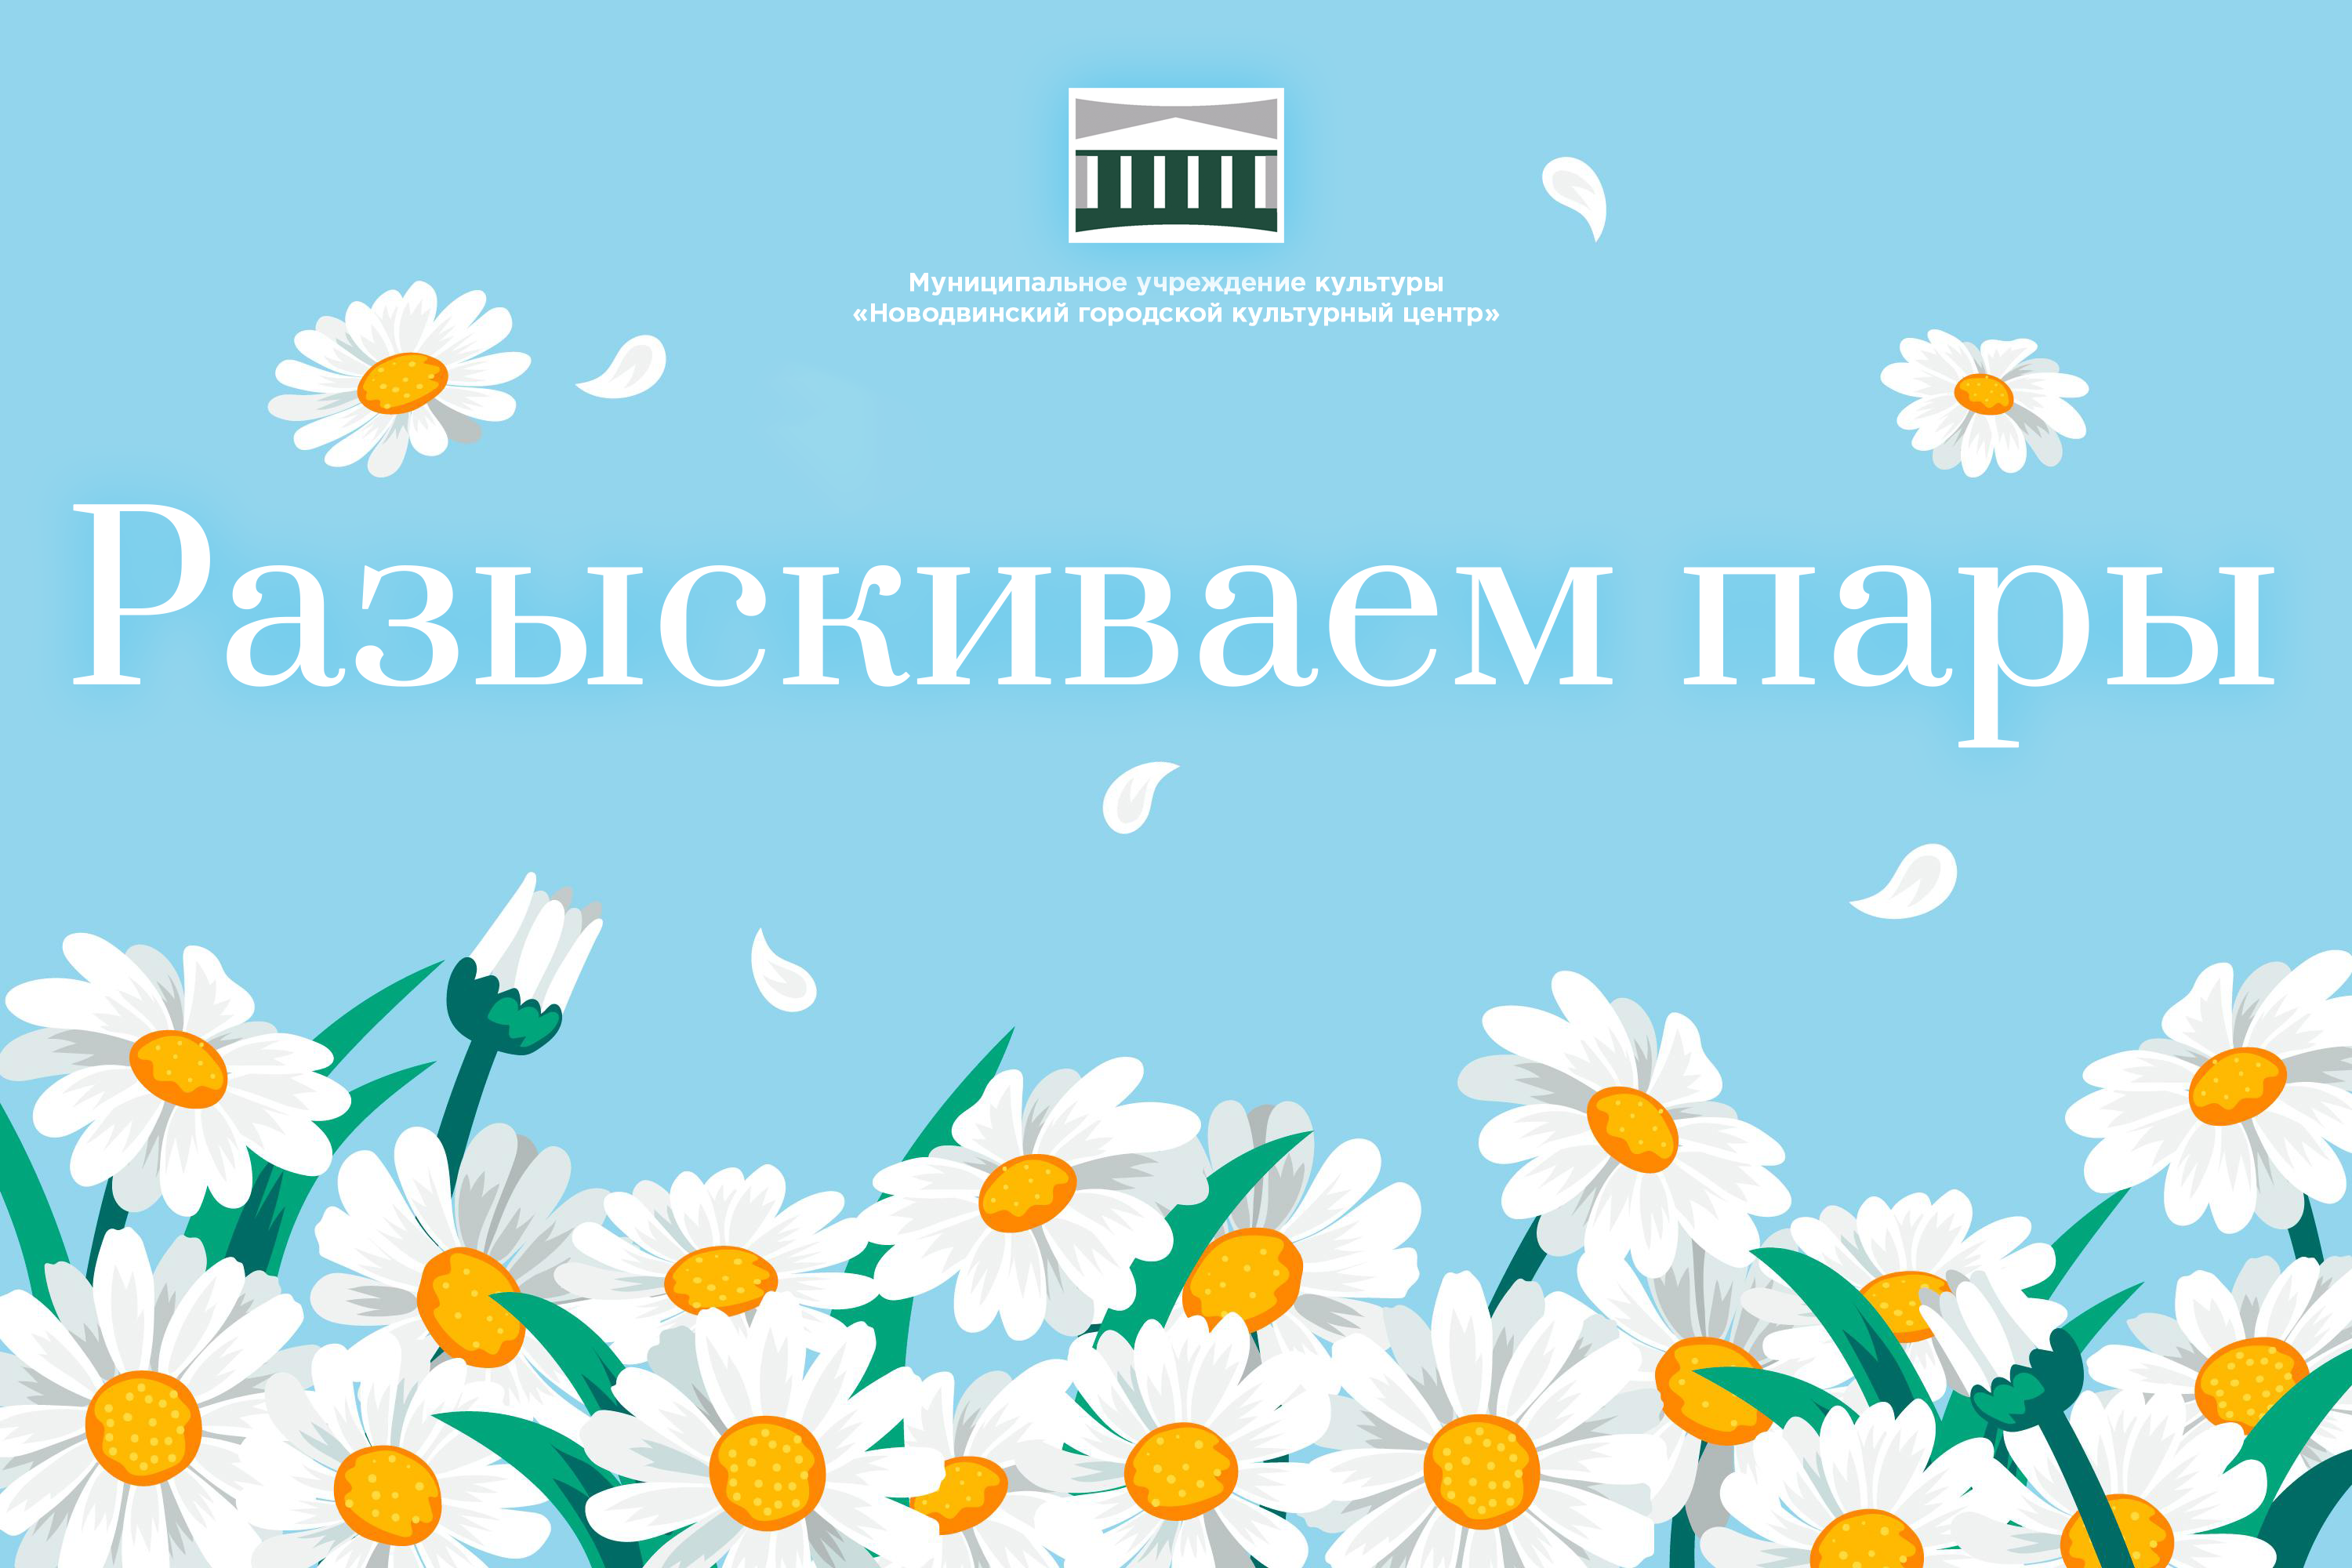 8 июля ежегодно отмечается Всероссийский день семьи, любви и верности. В эту замечательную дату в Новодвинске состоится праздничный концерт «И верность, и любовь храня»!